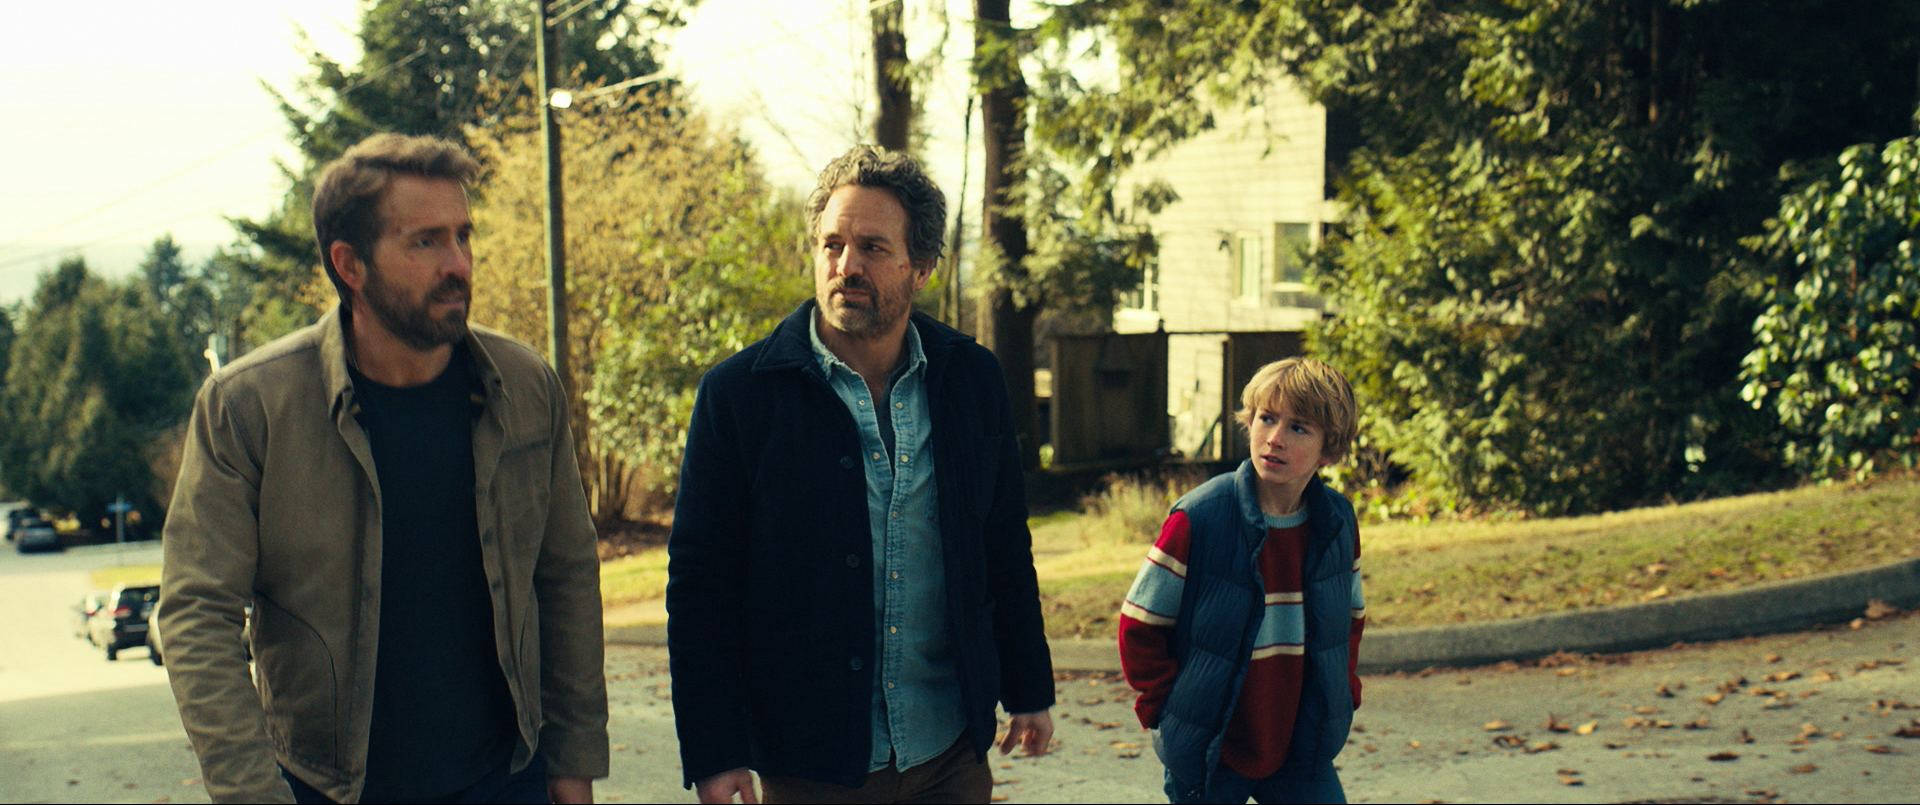 Ryan Reynolds, Mark Ruffalo y Walker Scobell representan tres generaciones diferentes en esta película. (Netflix)